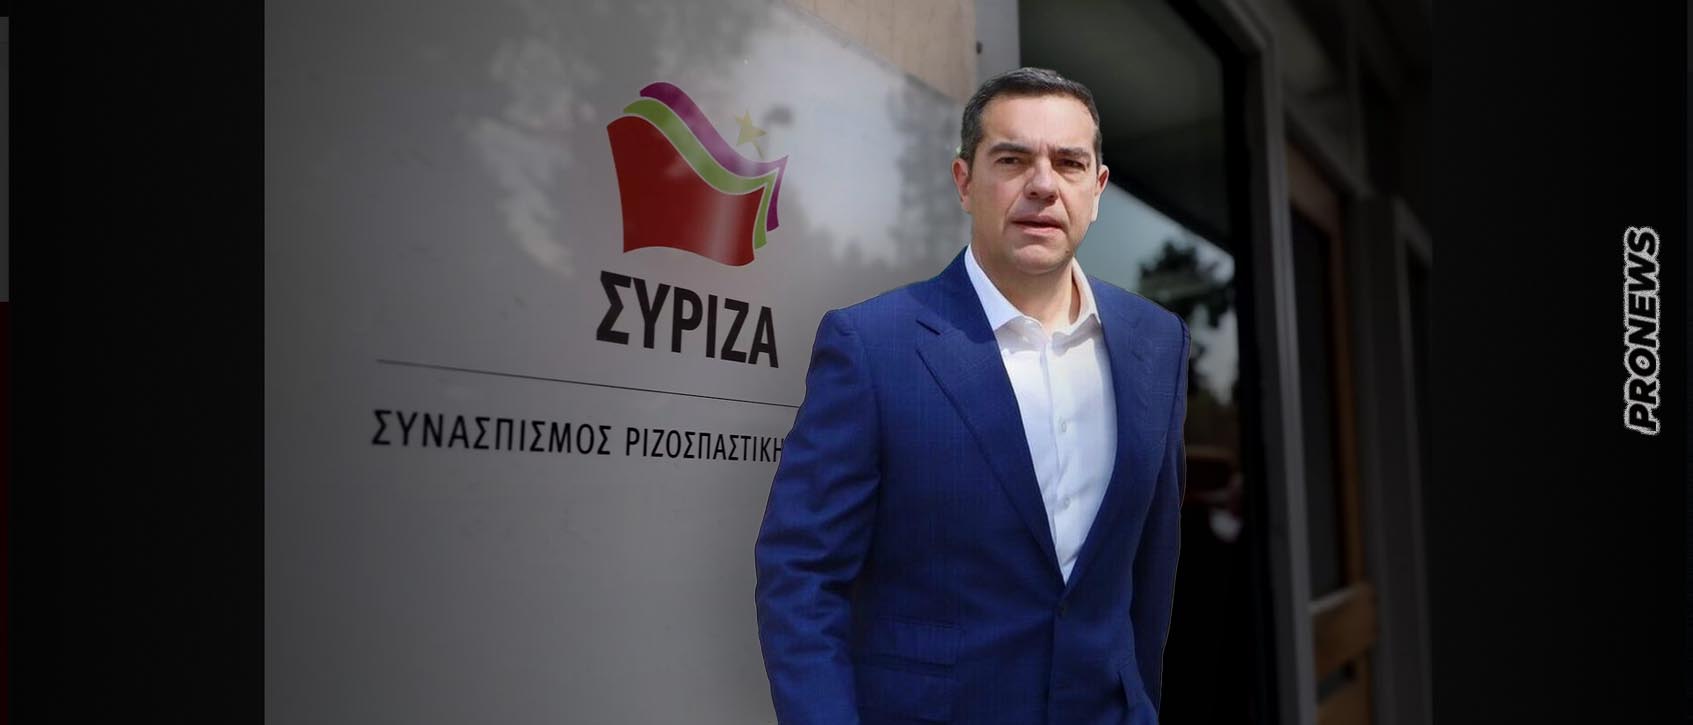 Χ.Σπίρτζης: «Ο καινούργιος πρόεδρος του ΣΥΡΙΖΑ δεν θα βγει με καλλιστεία – Ο Α.Τσίπρας ήταν ο ηγέτης που μας ένωνε»